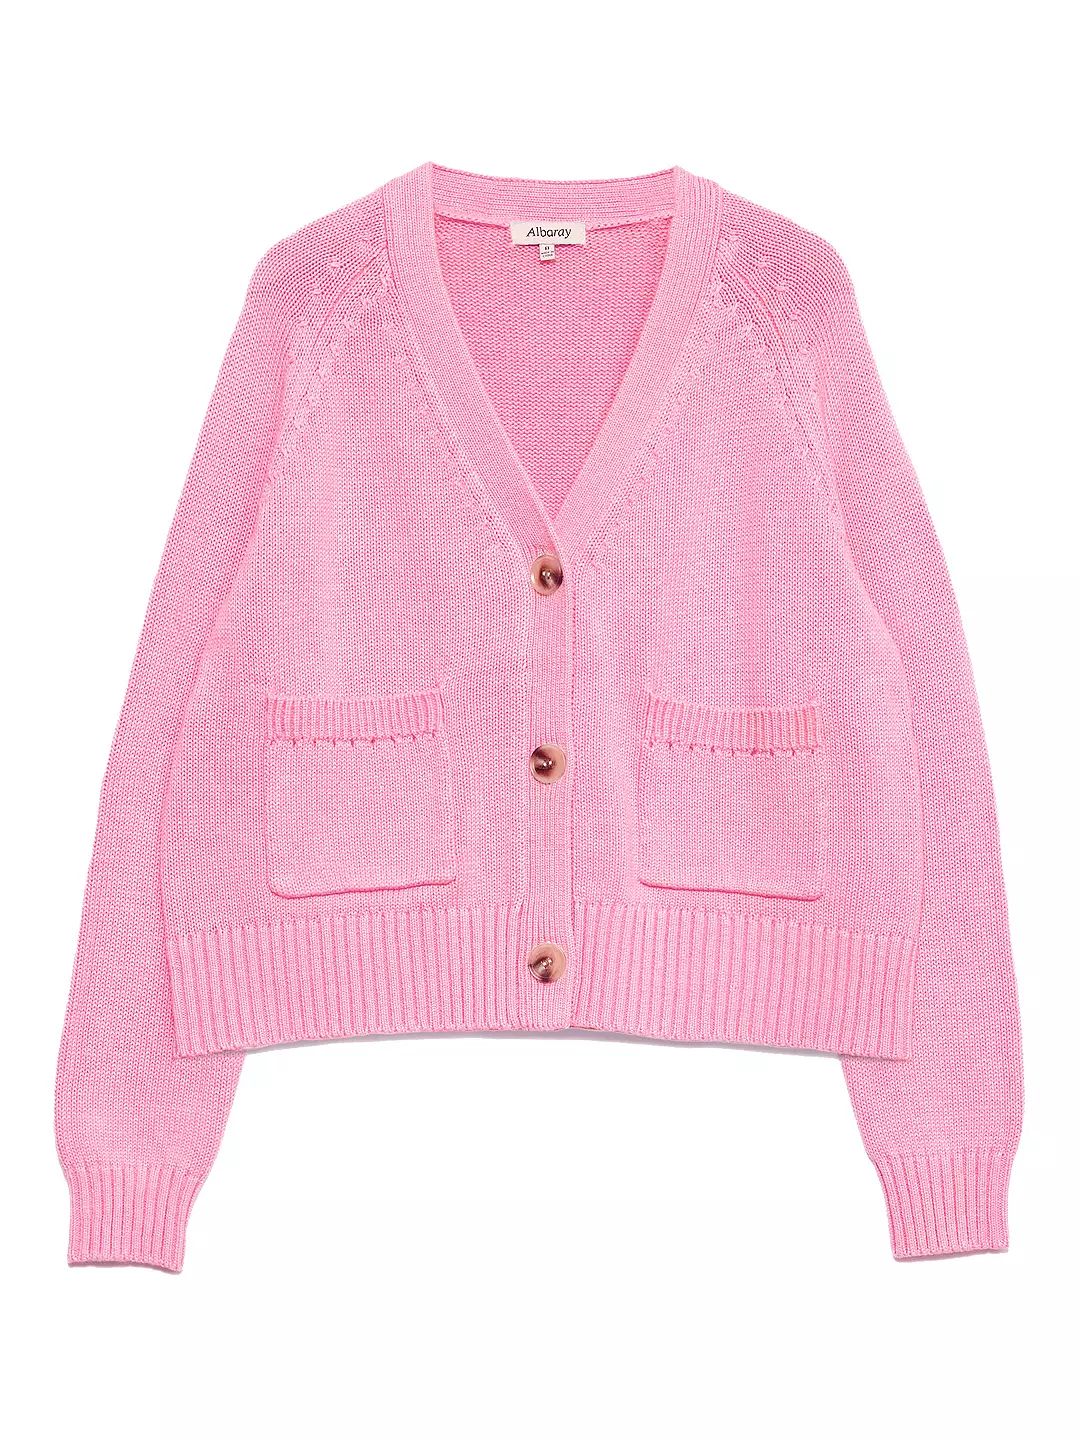 Albaray Relaxed Cotton Cardigan, Pink | John Lewis (UK)